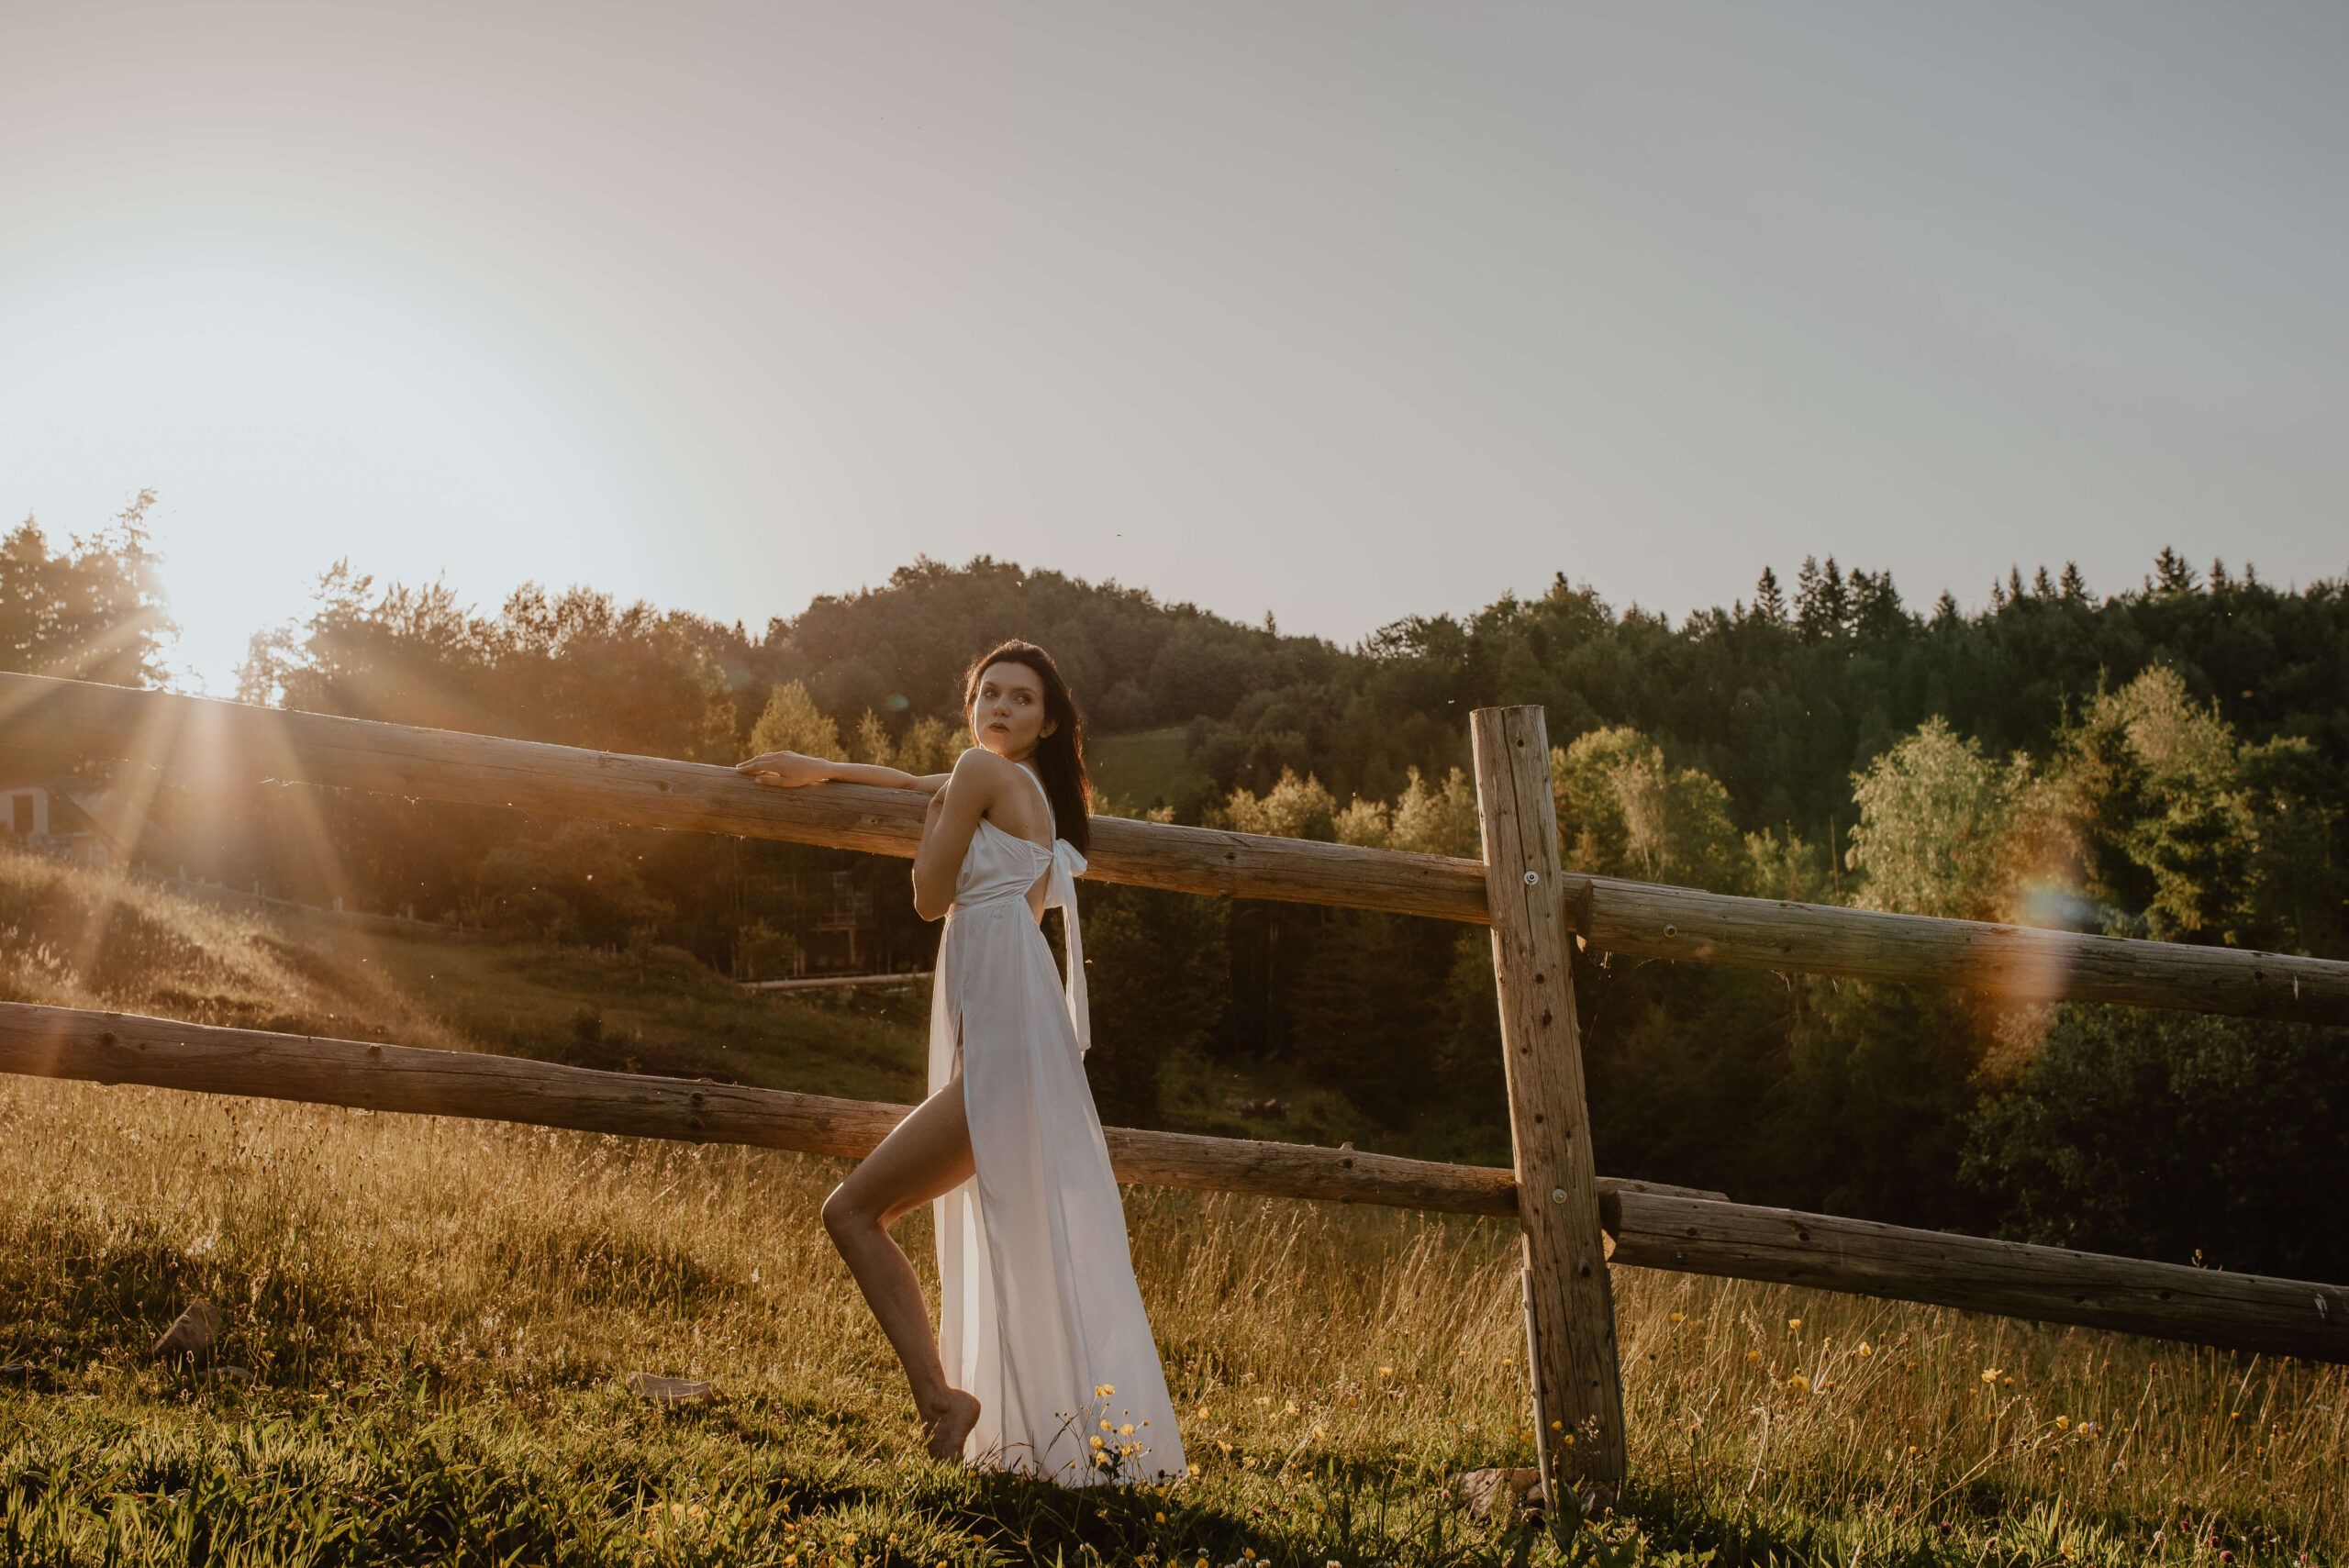 Eine natürliche und elegante Braut in einem leichten, fließenden Kleid, die den Sonnenaufgang in der Nähe eines Pferdestalls genießt und von der unberührten Schönheit der Natur umgeben ist.